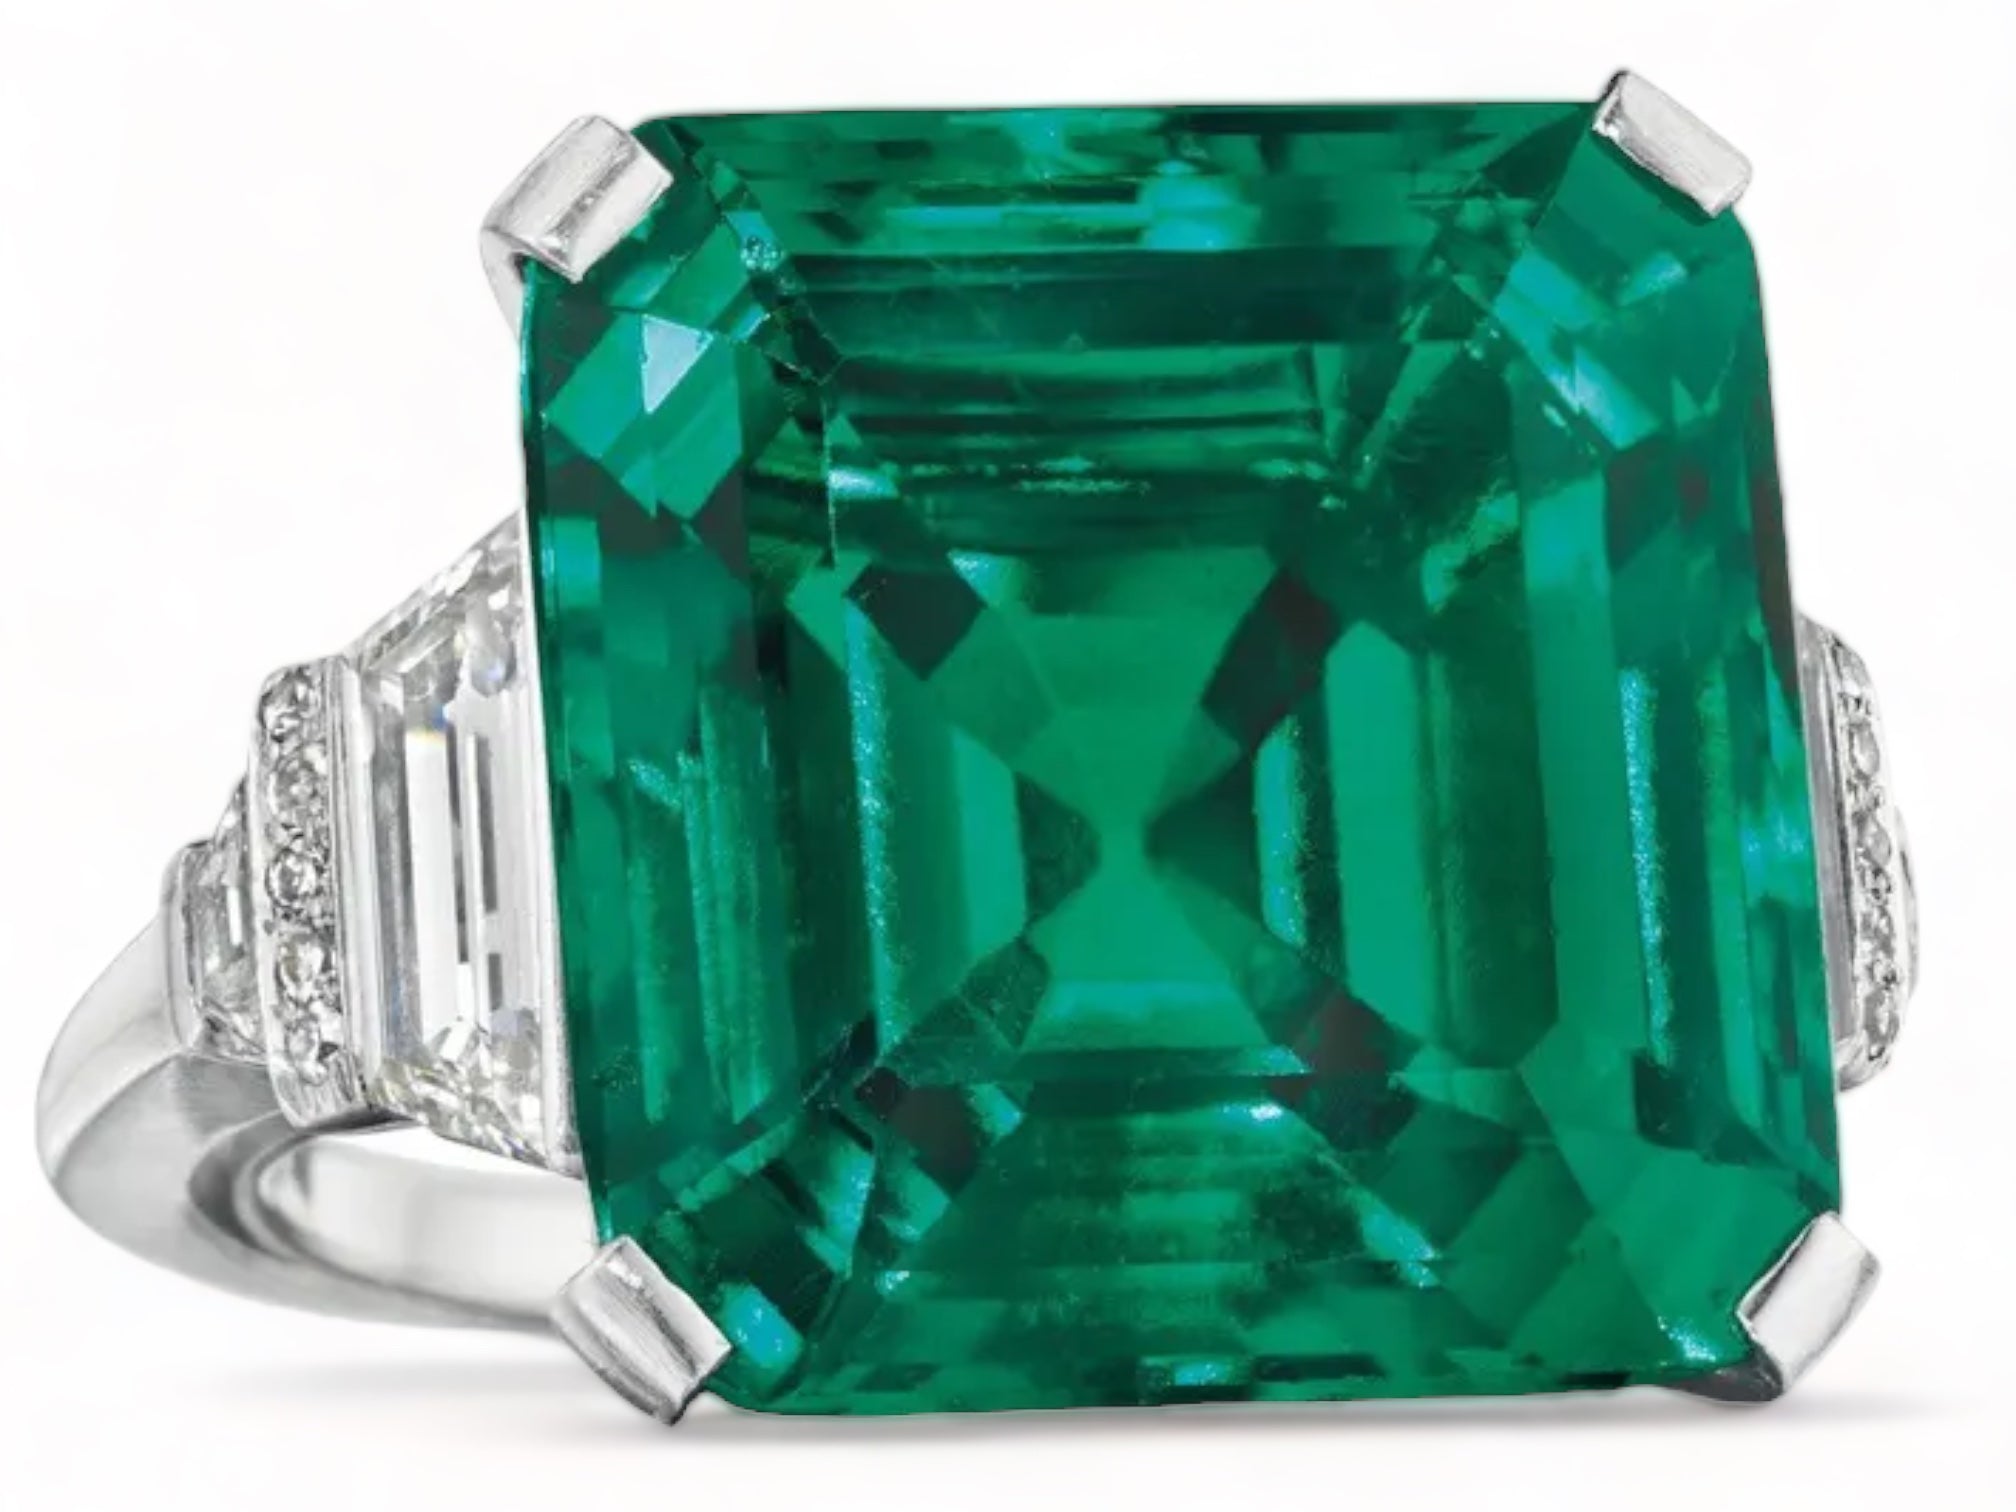 Rockefeller Emerald, a 18.04-carat emerald